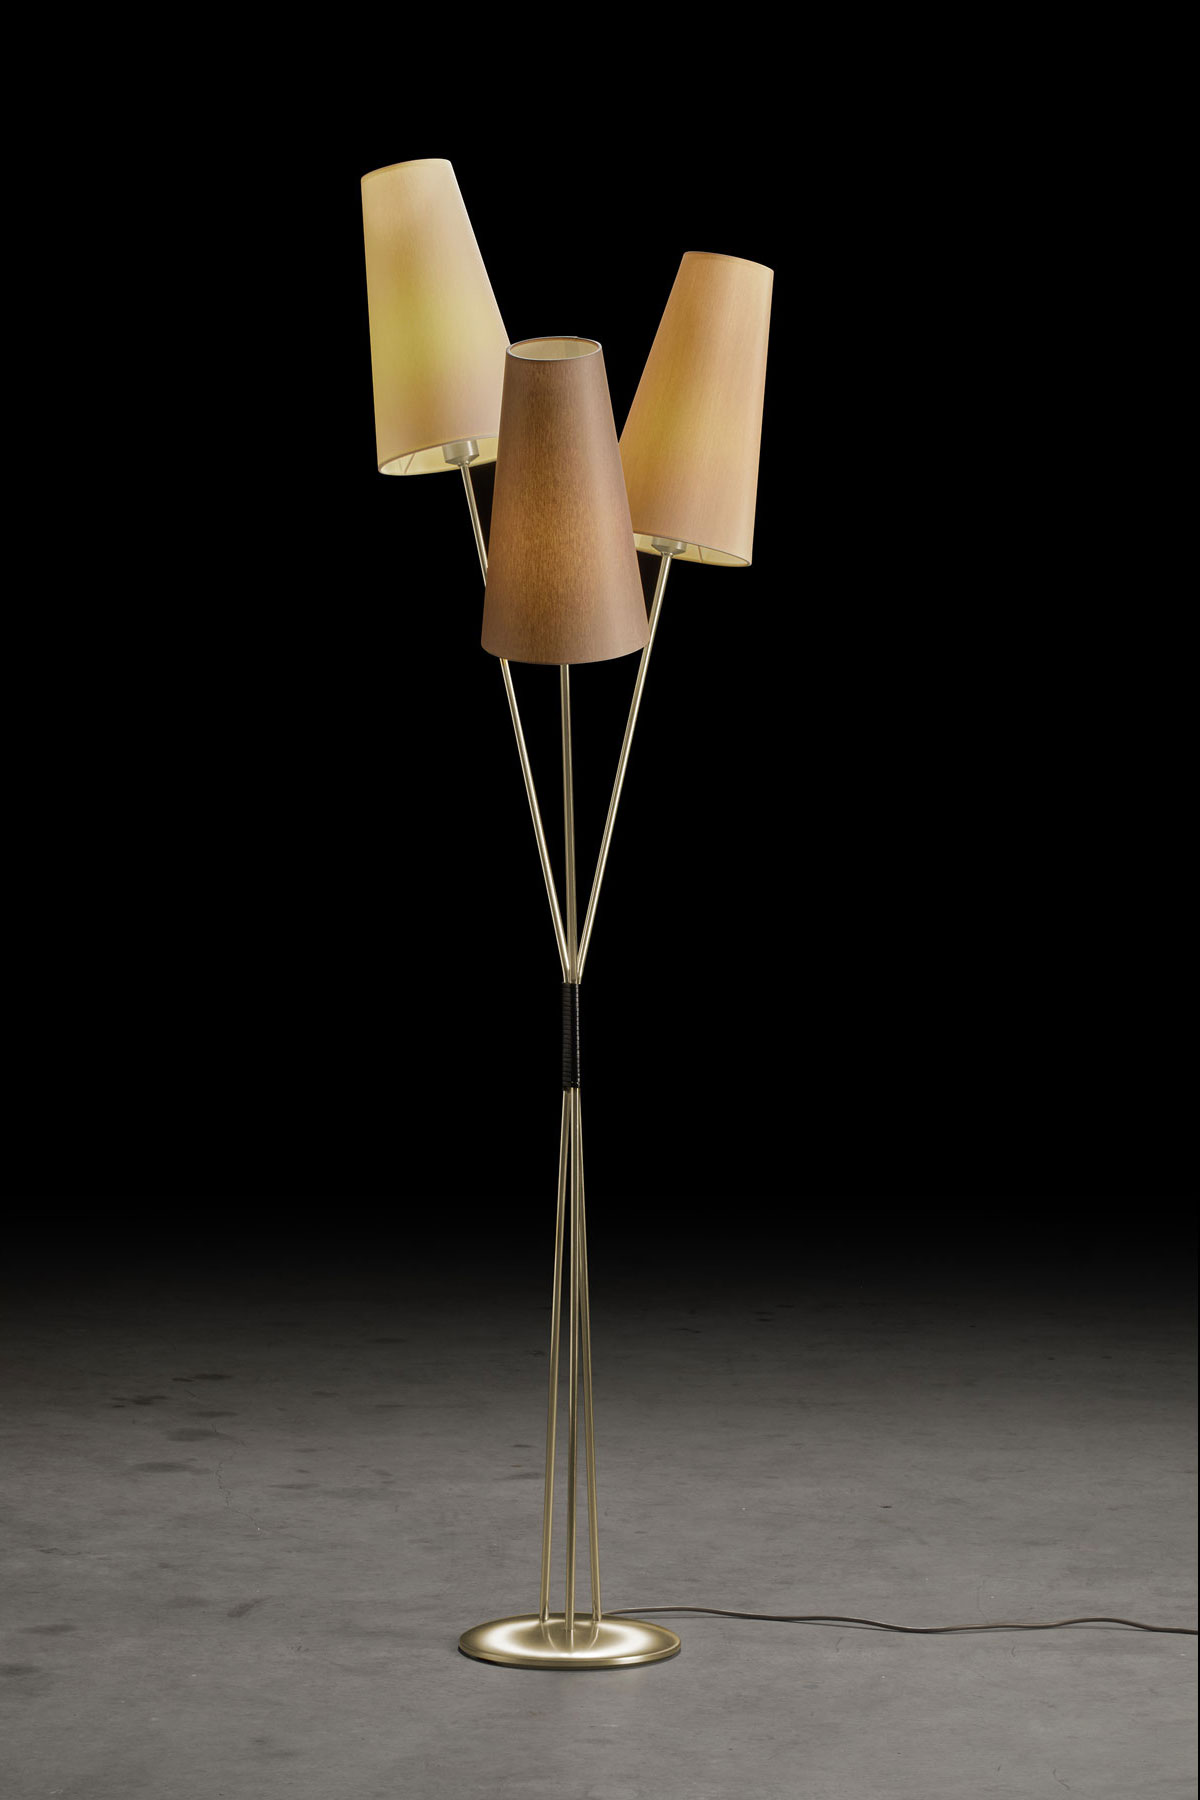 FIFTIES – Stehlampe im 50er Jahre-Look mit drei Schirmen im Bündel, viele Farben: Gestell in Messing matt, Schirme in Champagner, Sand, Taupe